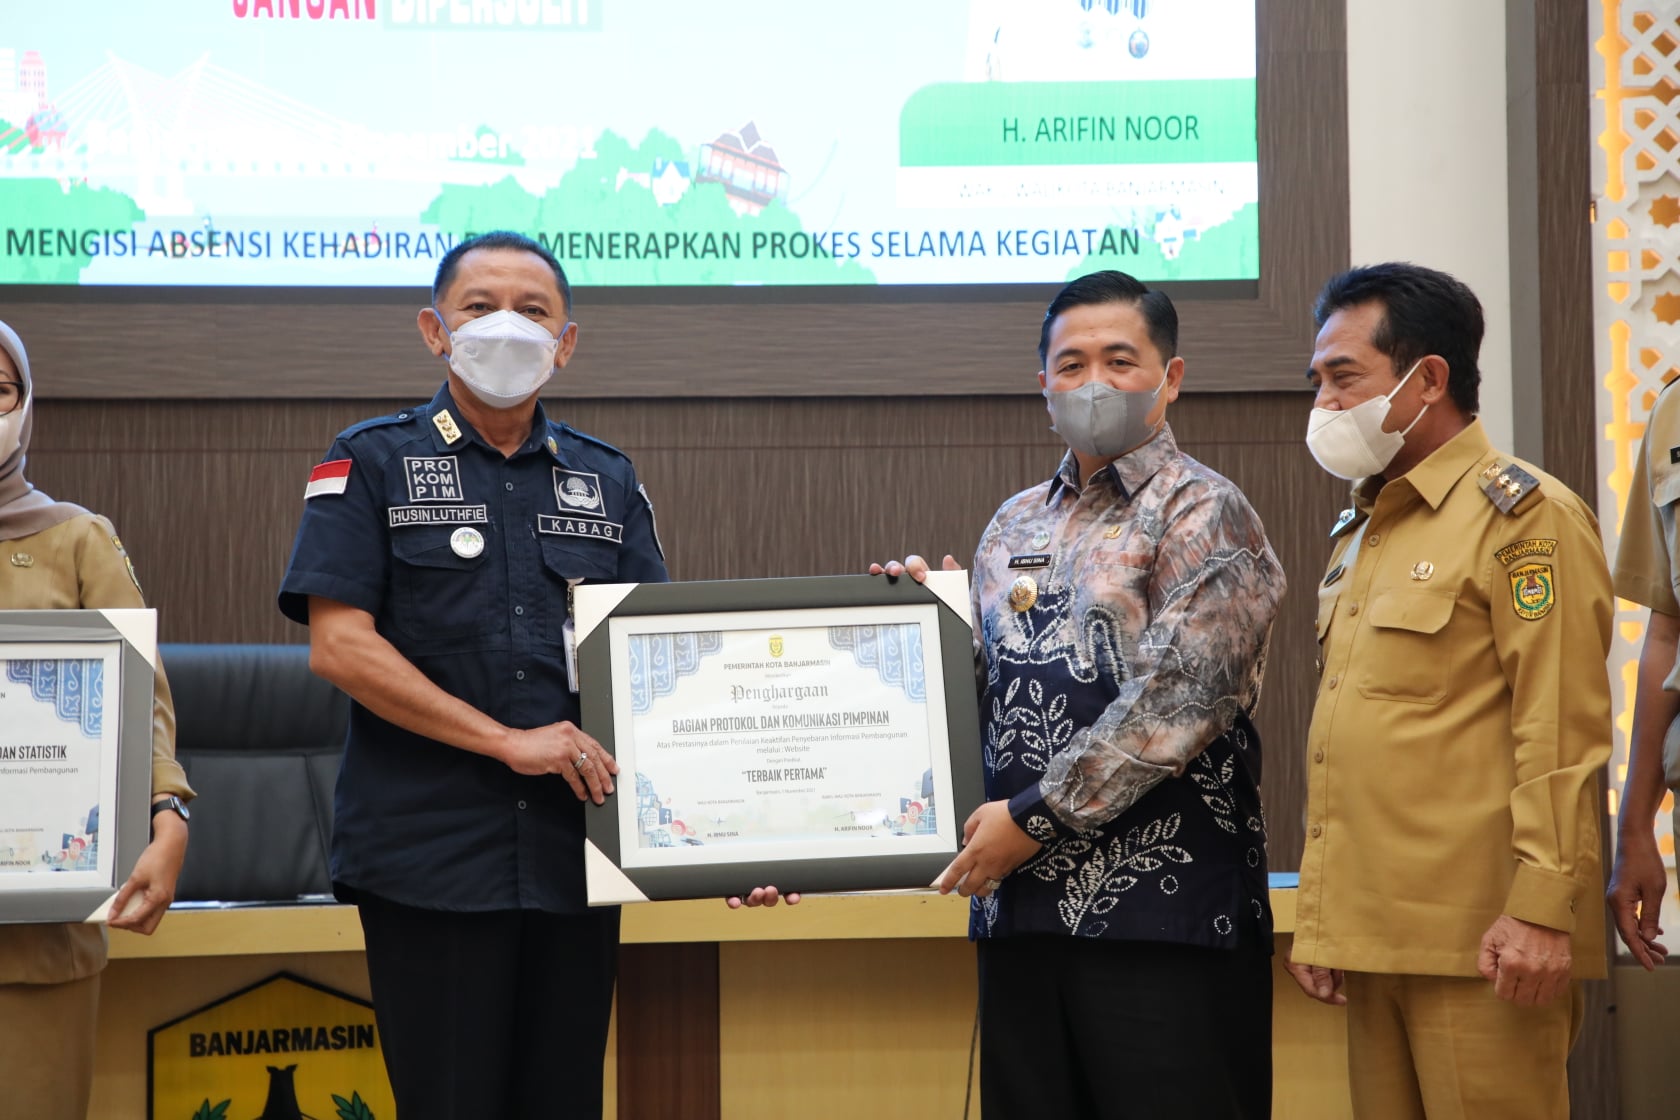 Walikota Banjarmasin, H Ibnu Sina didampingi Wakil Walikota Banjarmasin, H Arifin Noor saat memberikan penghargaan kepada Husin Luthfie, selaku pimpinan Bagian Protokol dan Komunikasi Pimpinan (Prokompim).